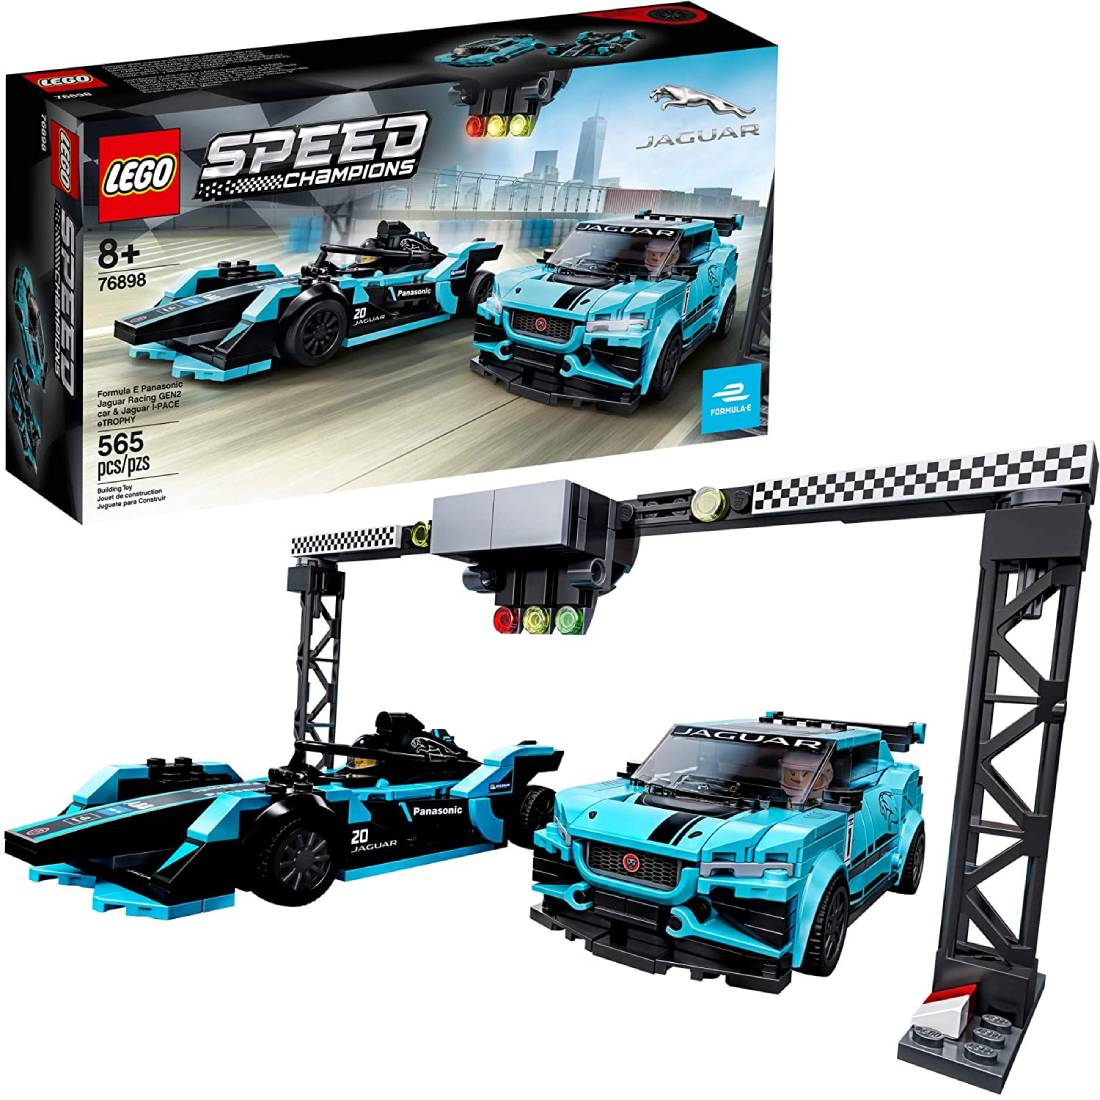 LEGO Speed Champions Formula E Panasonic Jaguar Racing Gen2 coche y Jaguar I-PACE 565 piezas